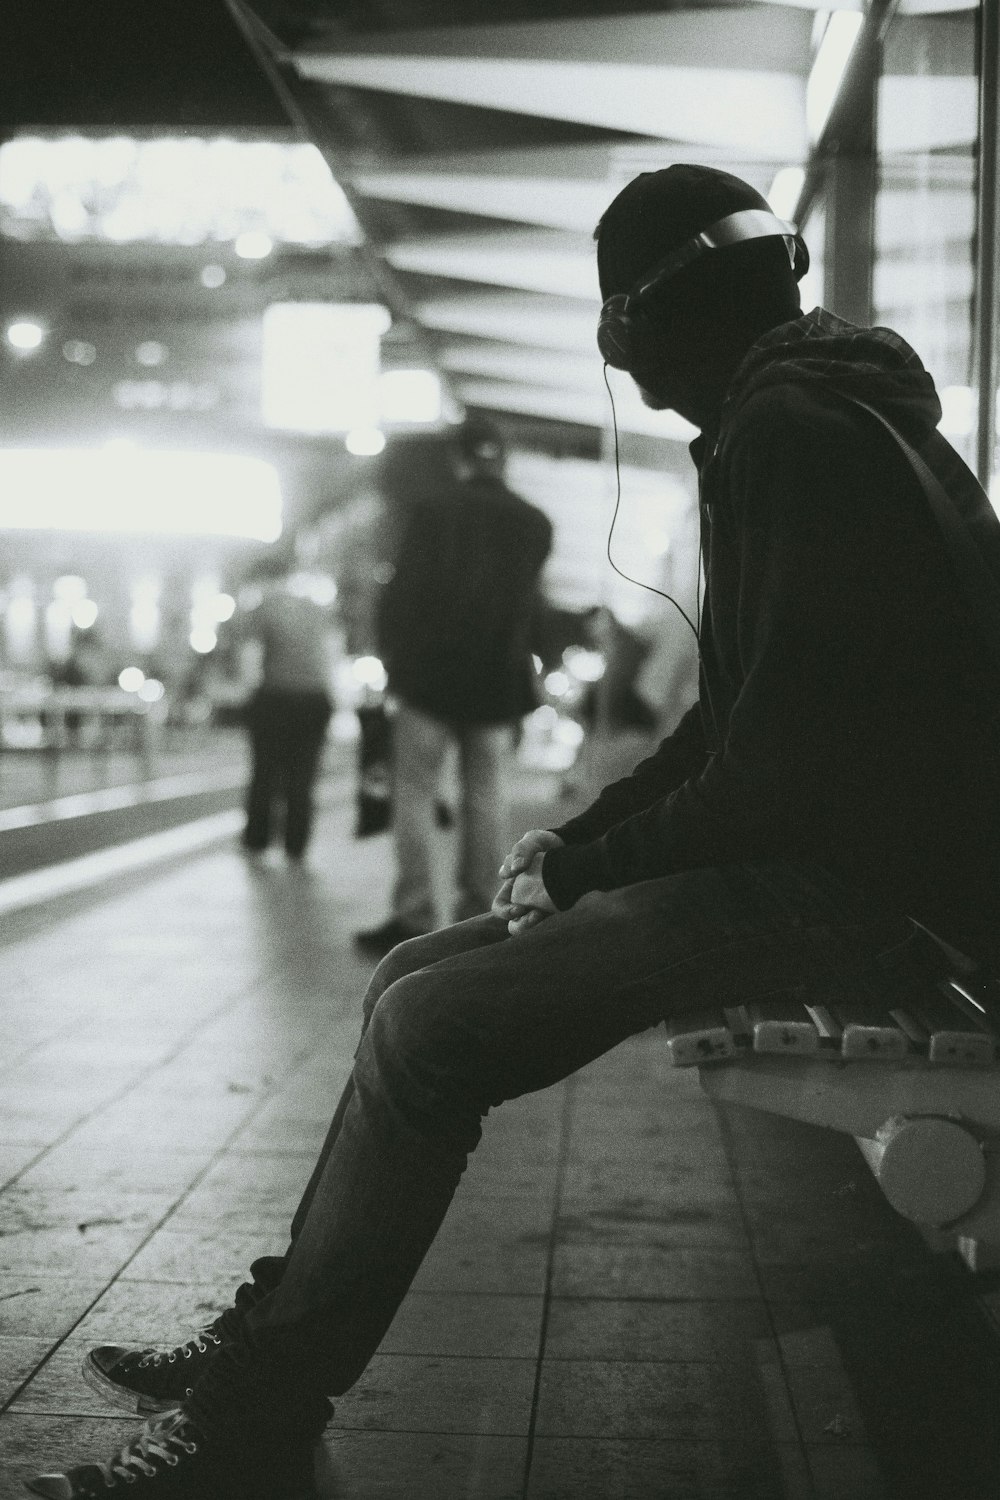 fotografia em tons de cinza de um homem sentado no banco enquanto ouve música